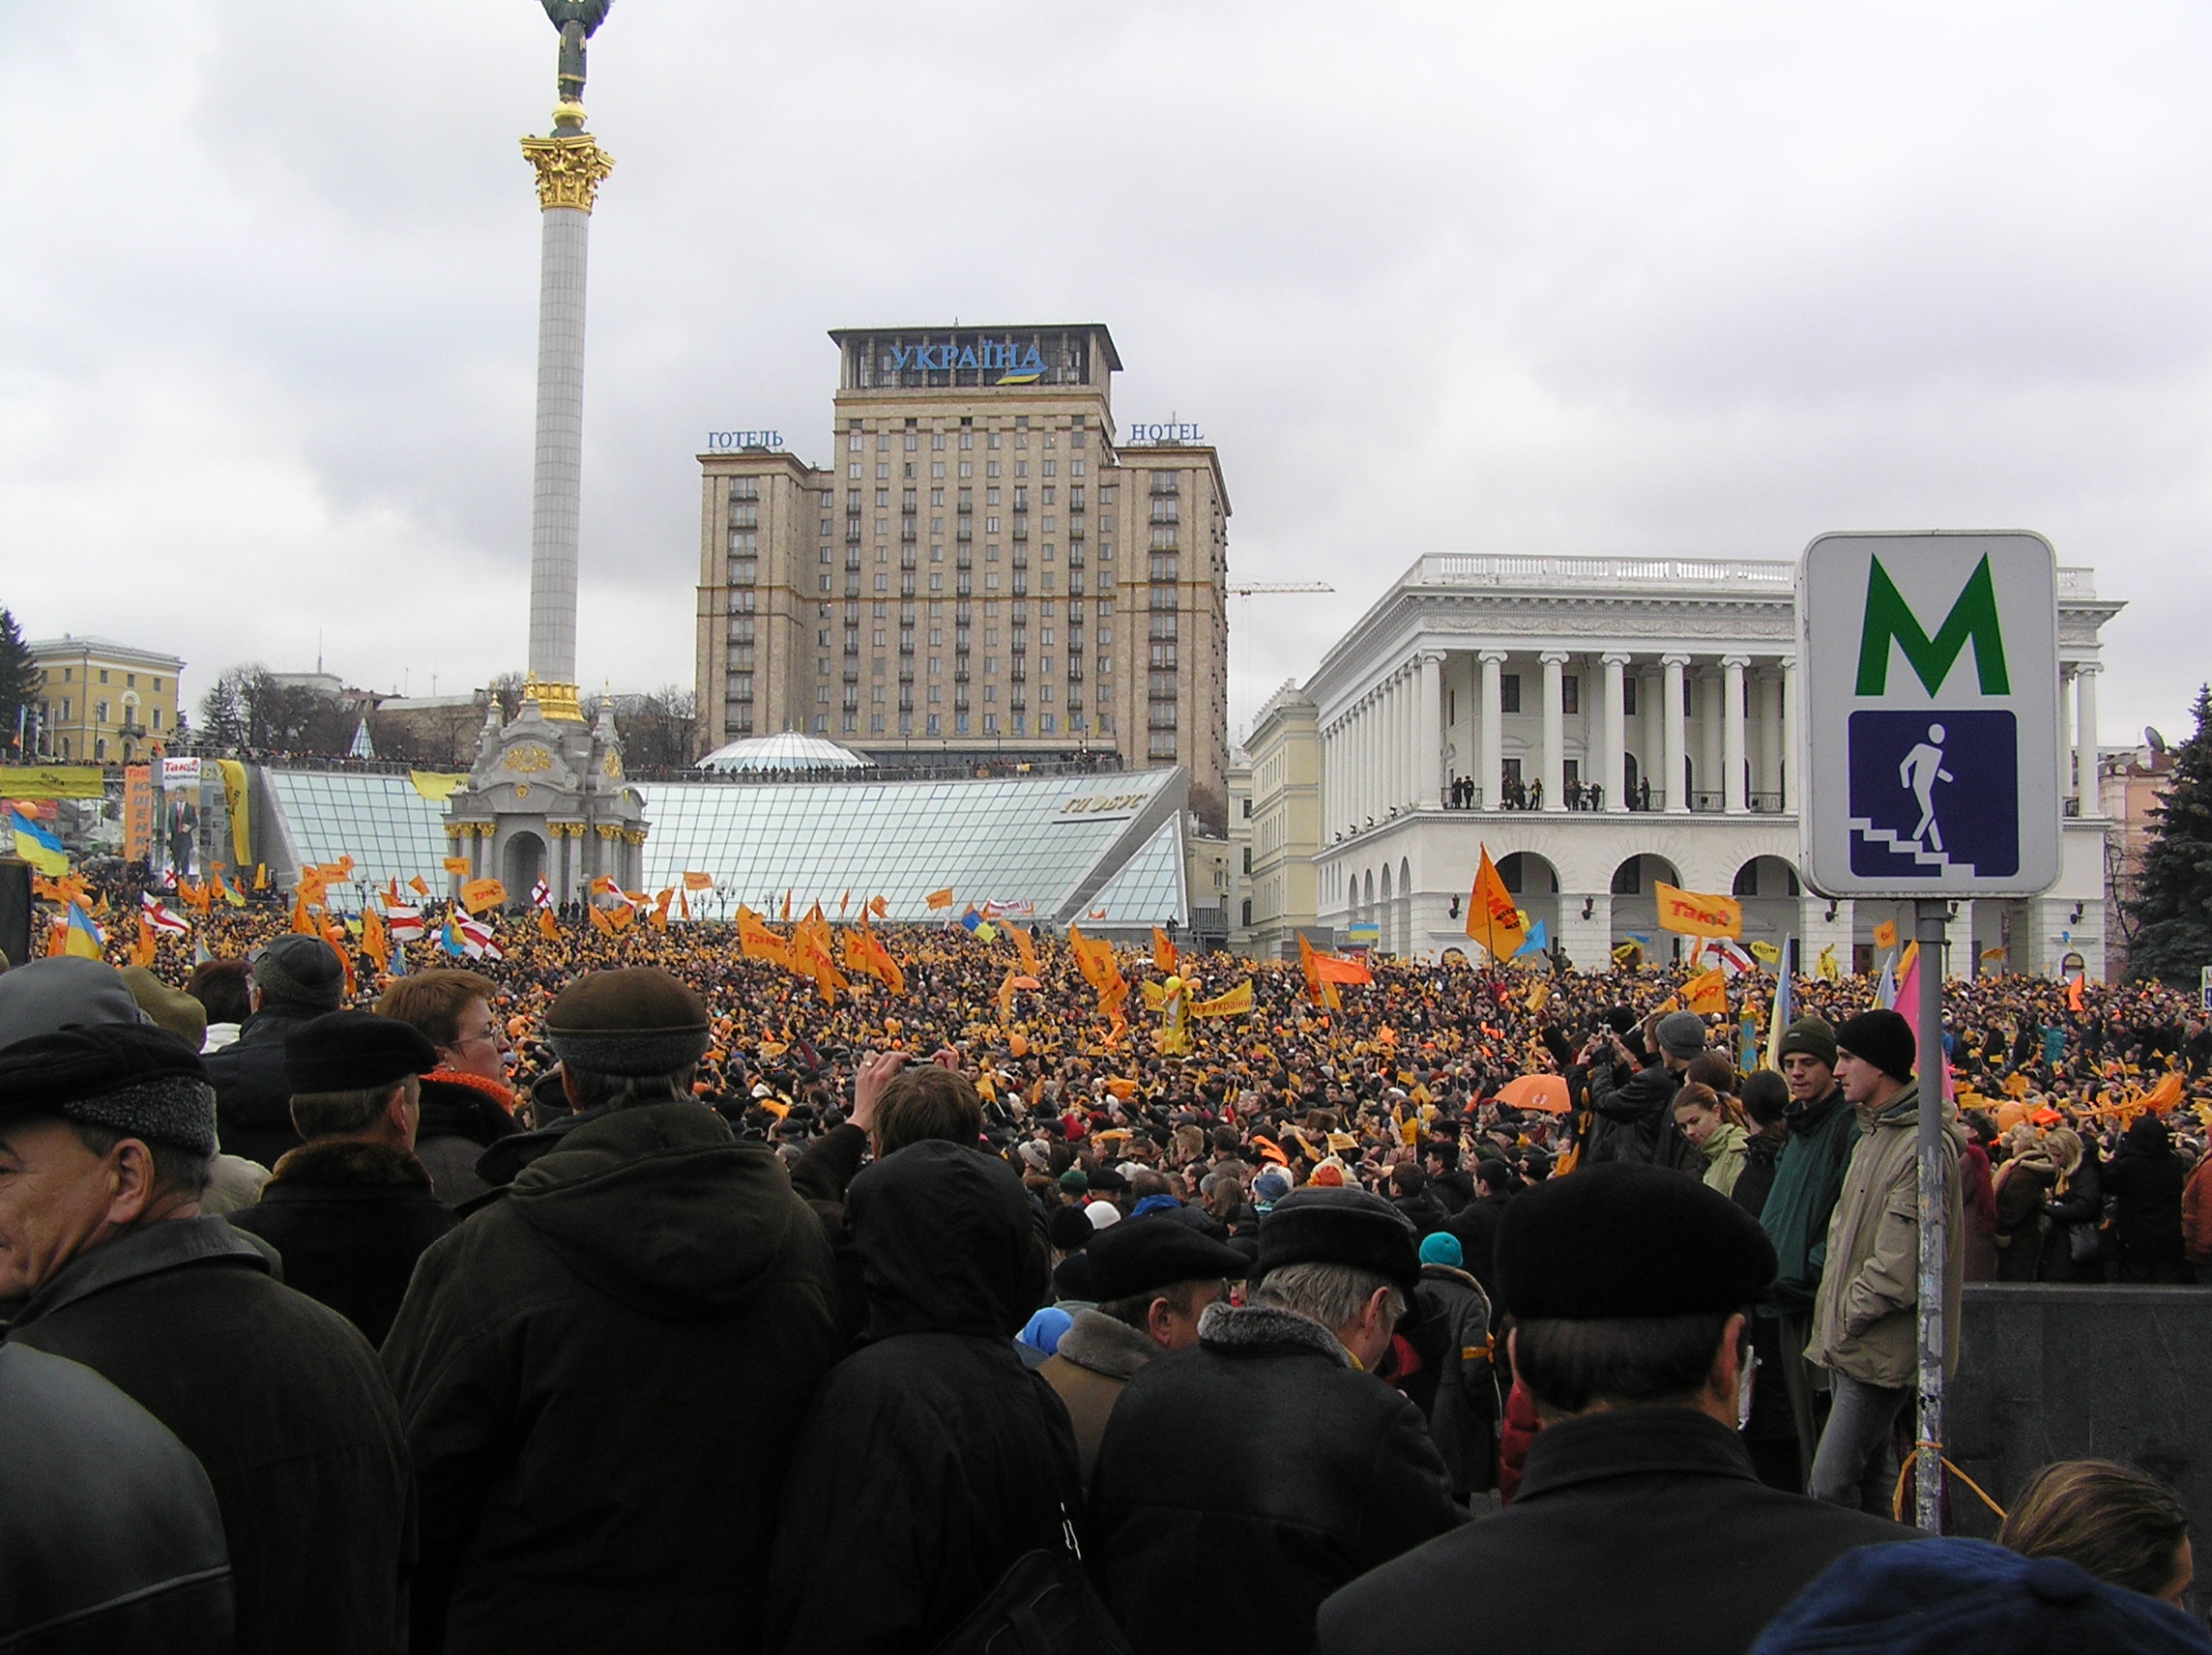 A Revolução Laranja foi uma série de protestos e eventos políticos, ocorridos entre 2004 e 2005, que tomou diversos lugares de toda a Ucrânia, em resposta às alegações maciças de corrupção, intimidação por votos e fraude eleitoral direta, durante a eleição presidencial ucraniana de 2004